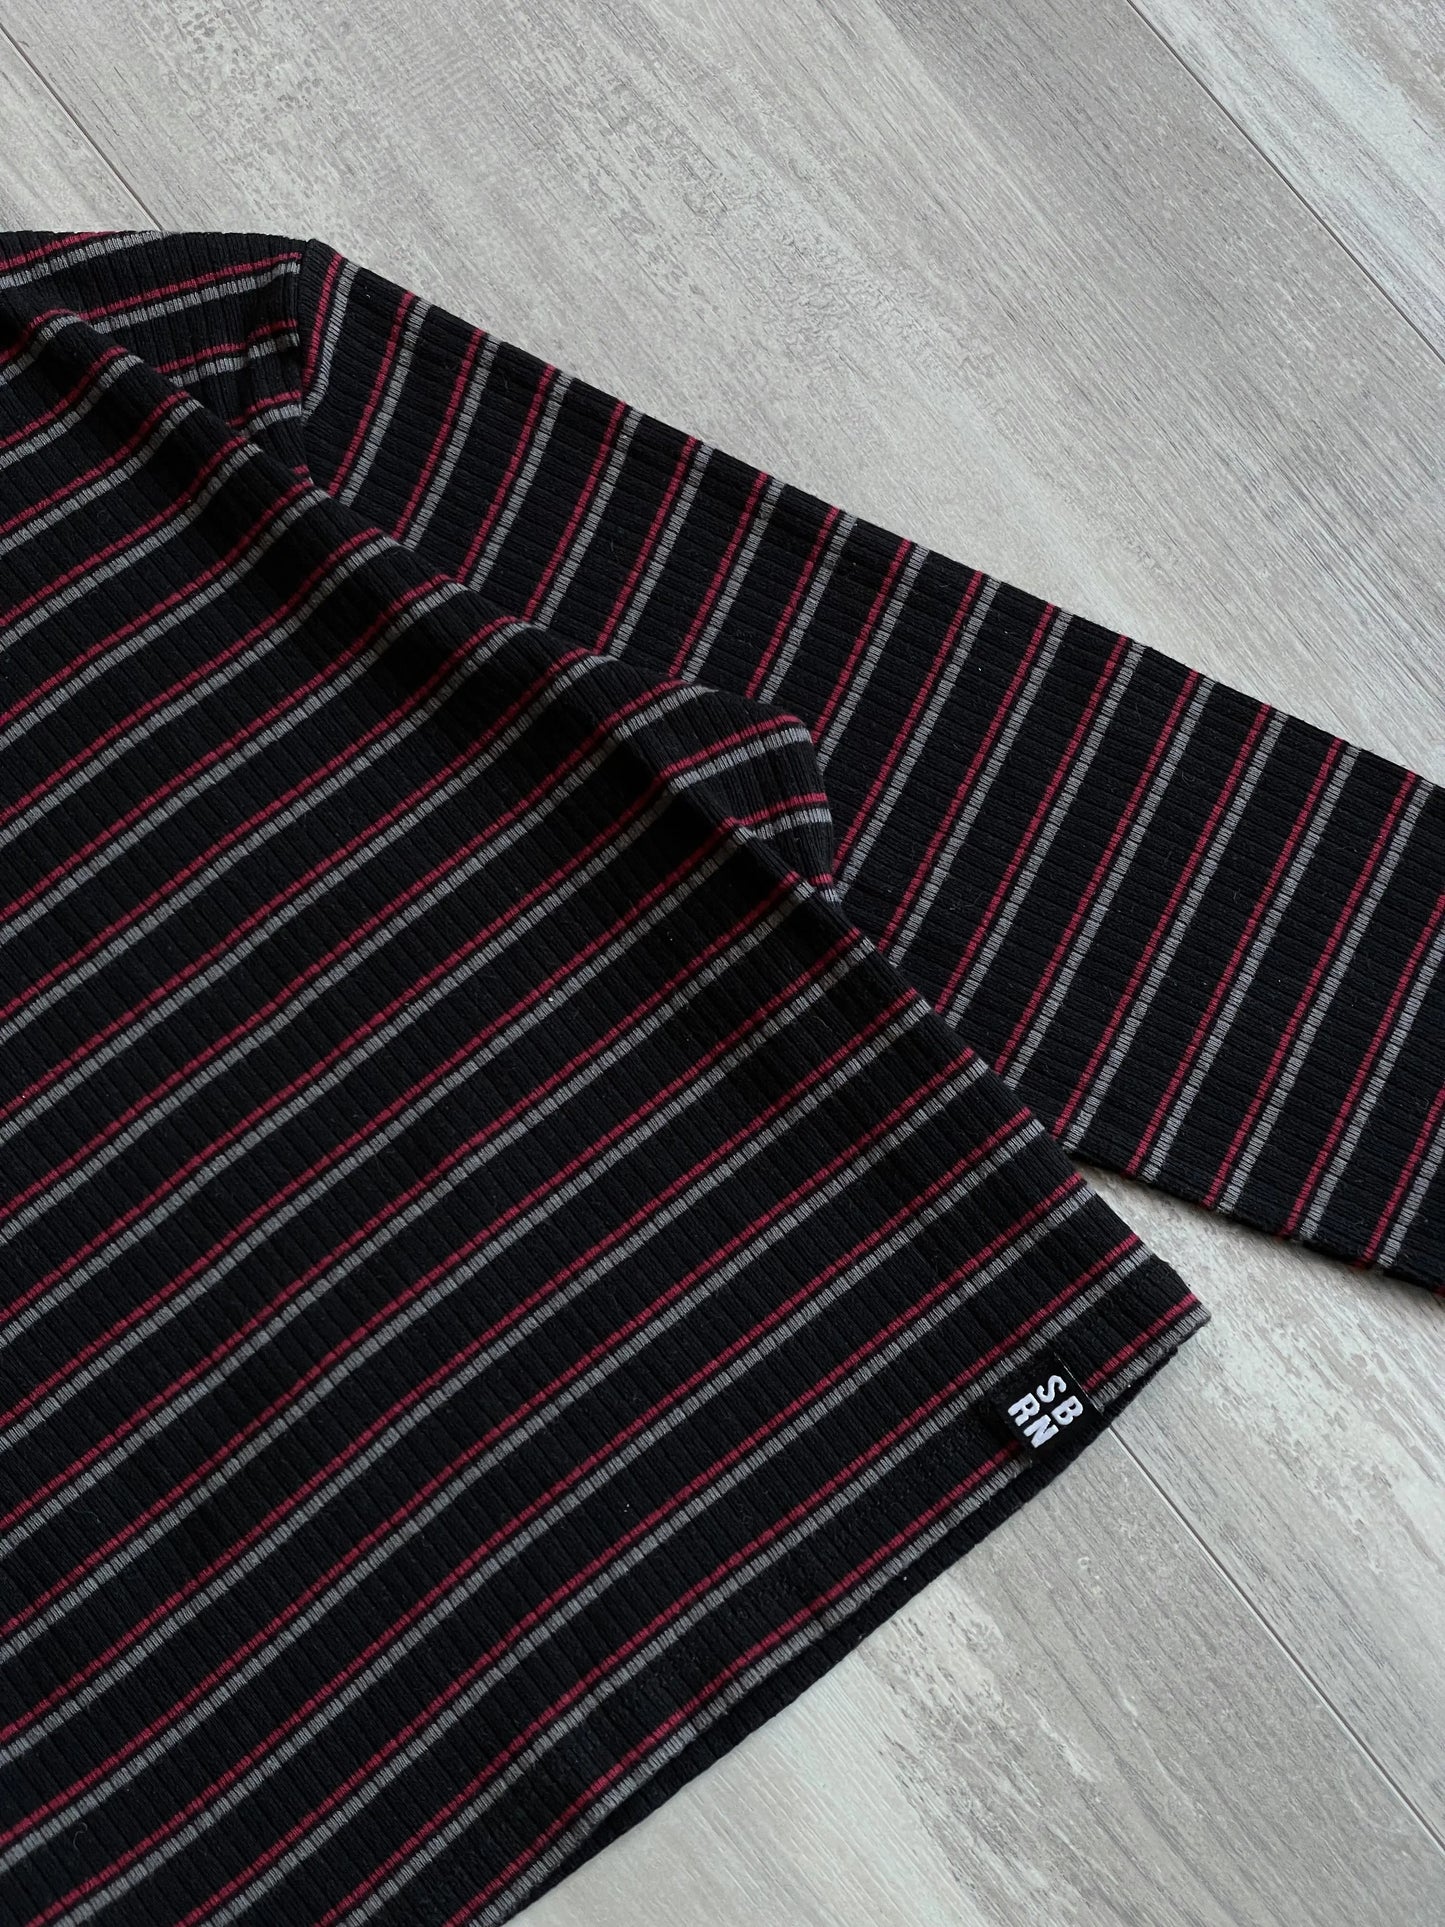 SBRN Striped Black/Red Long Sleeve Crop Top - 12 sullivansvintage